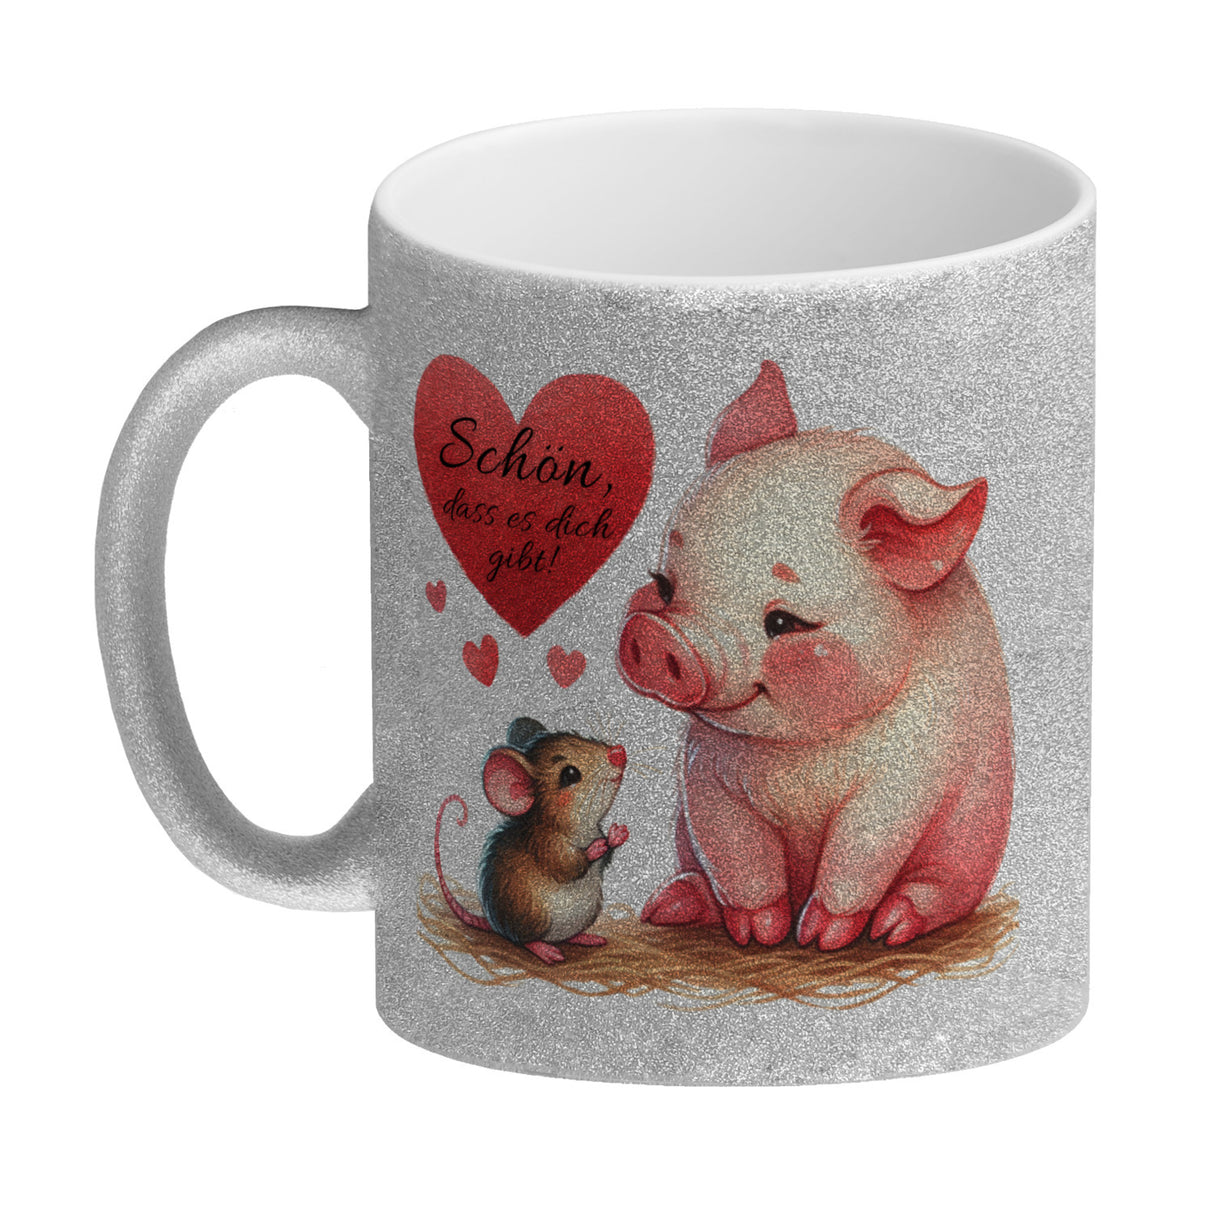 Schwein mit Maus und Herz Kaffeebecher mit Spruch Schön dass es dich gibt